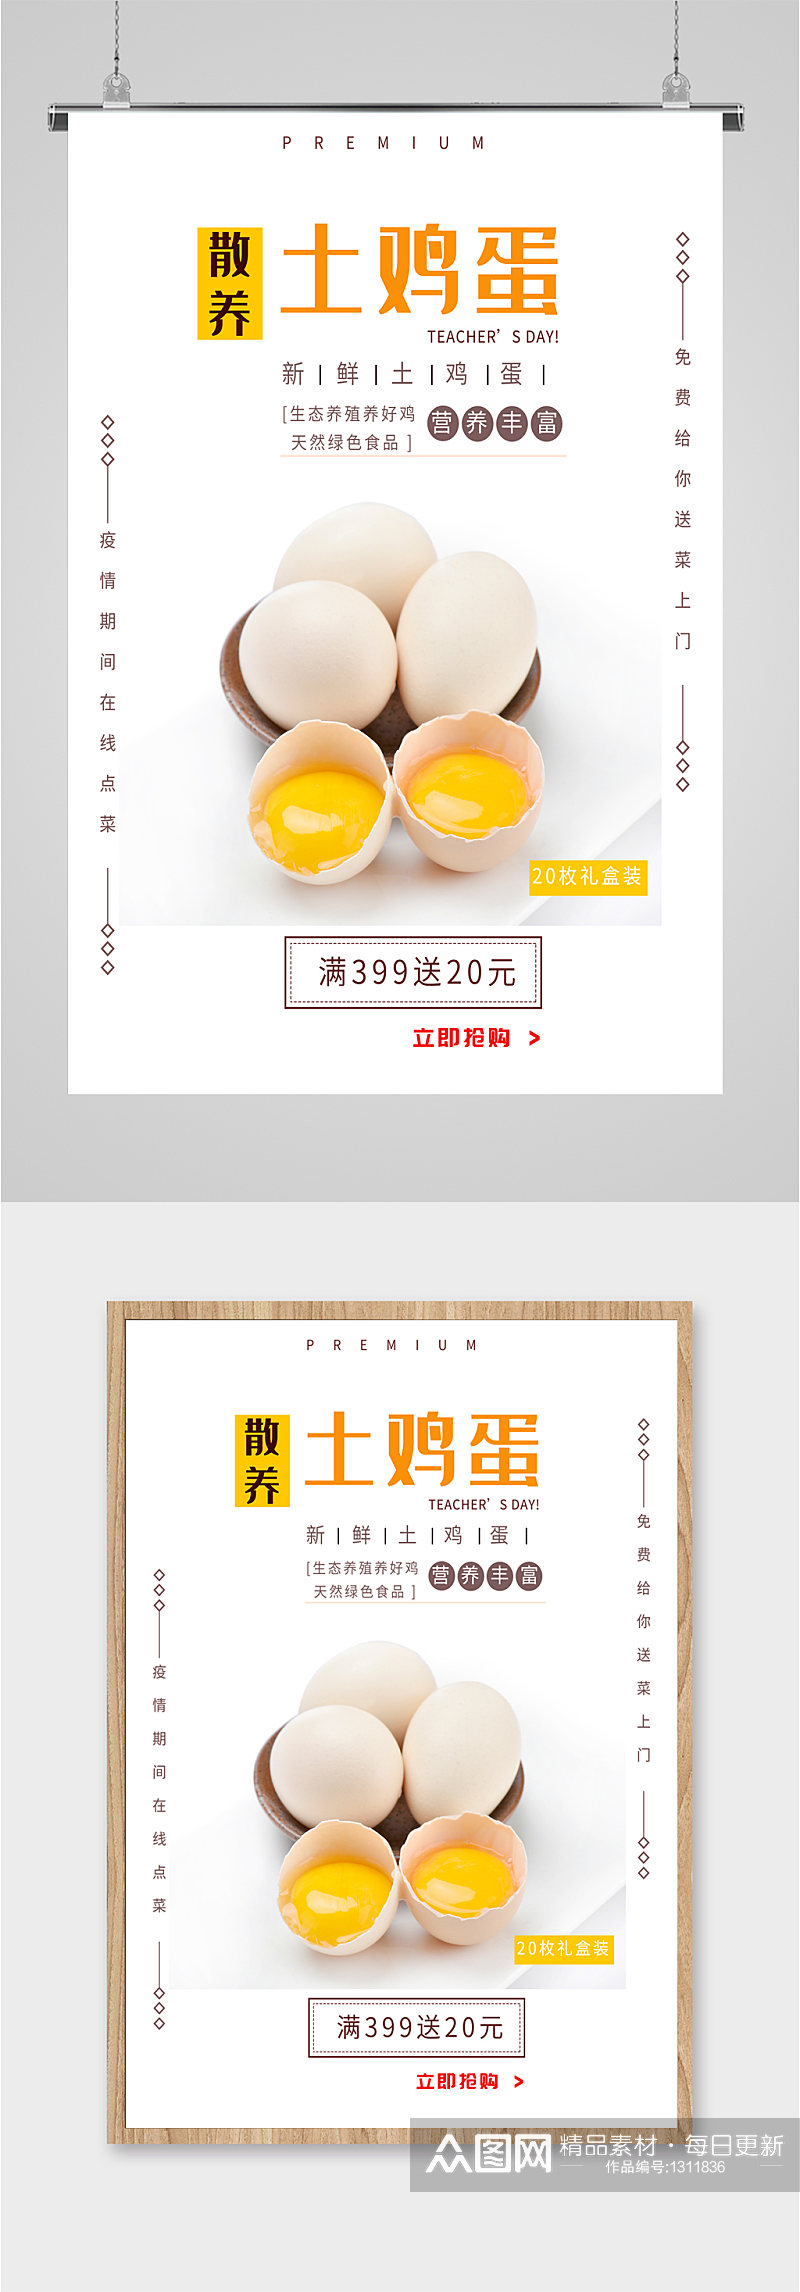 土鸡蛋土特产宣传海报素材